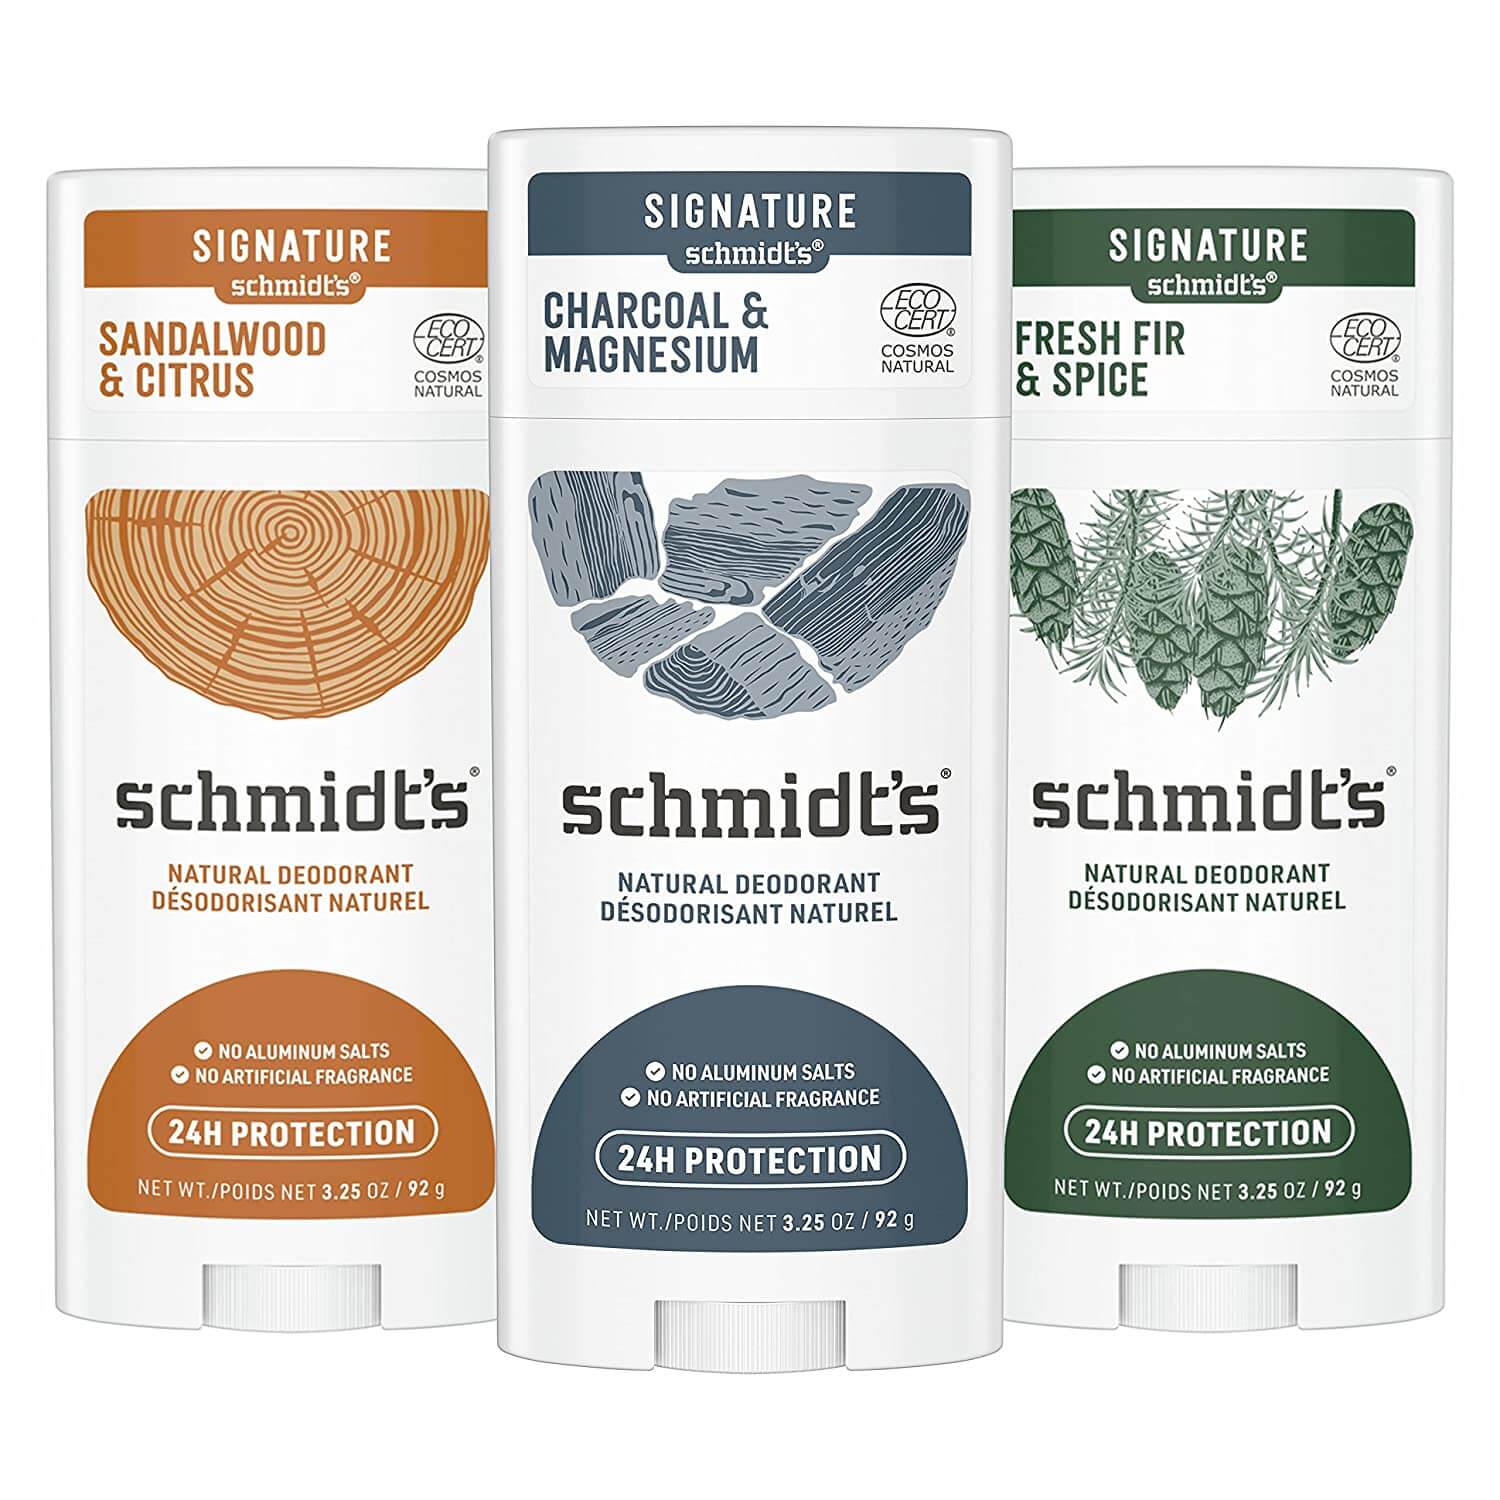 Schmidt’s clean deodorant